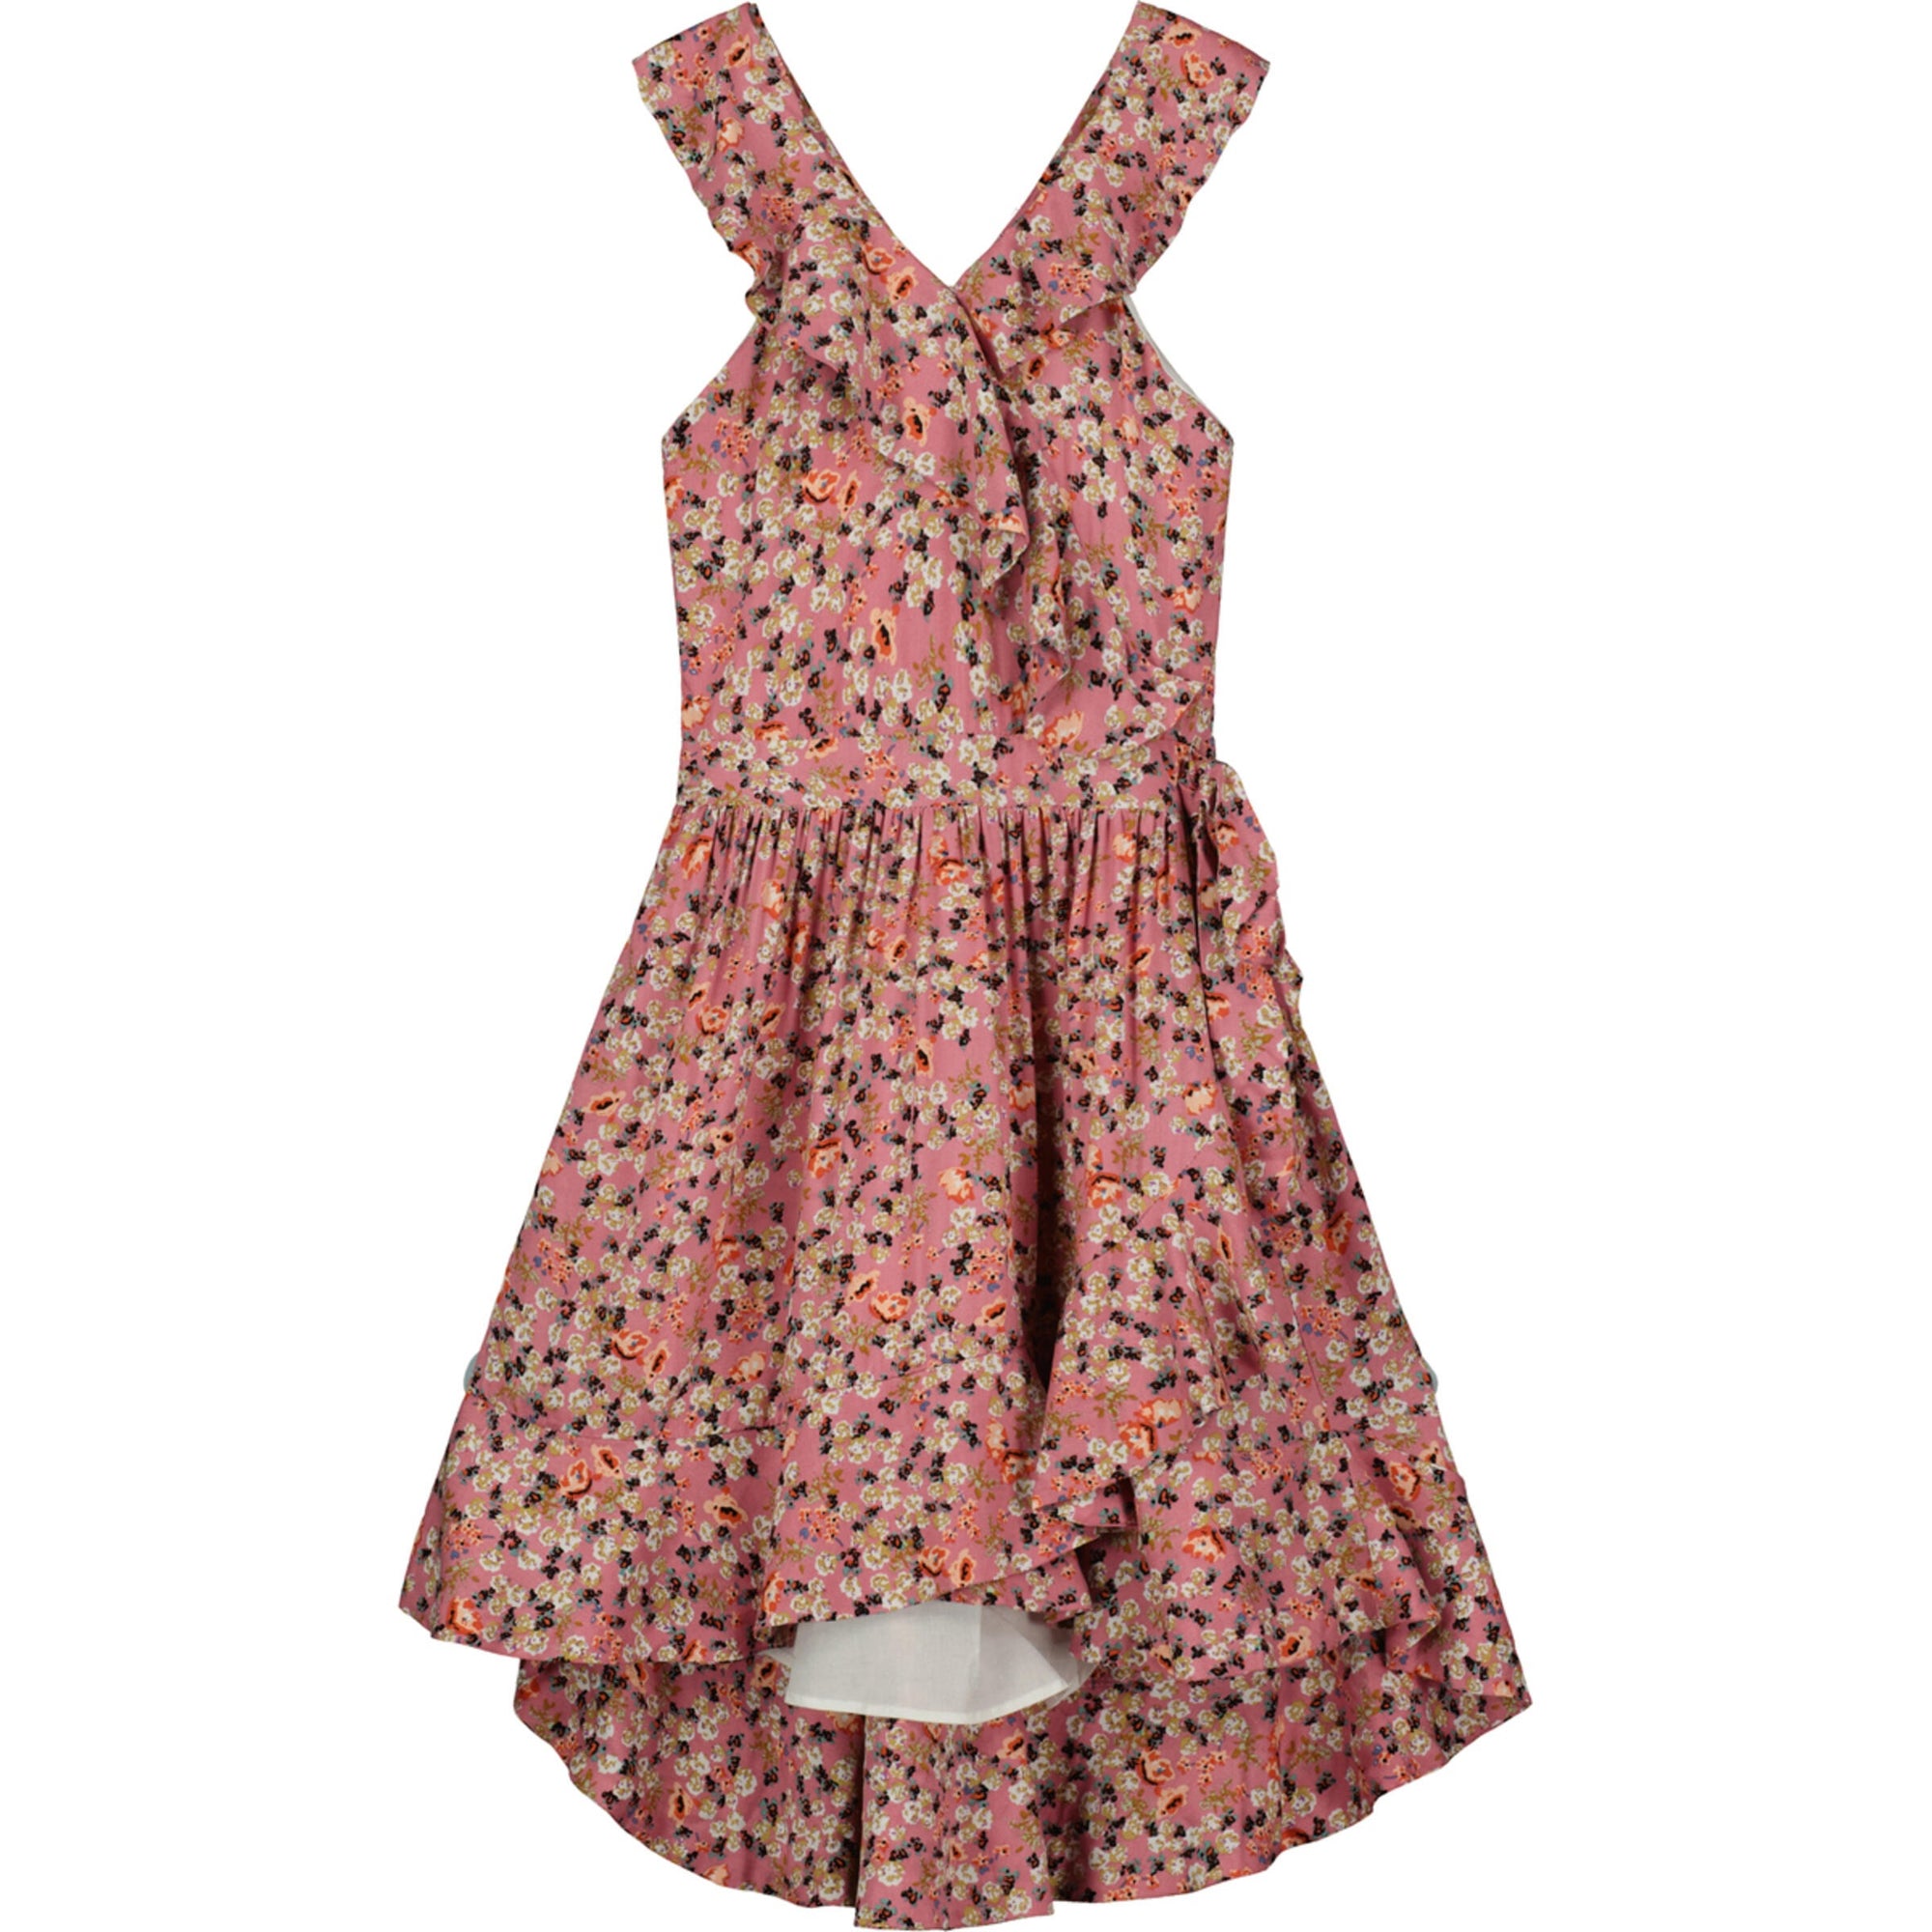 Vignette Etta Dress / Pink Vintage Floral